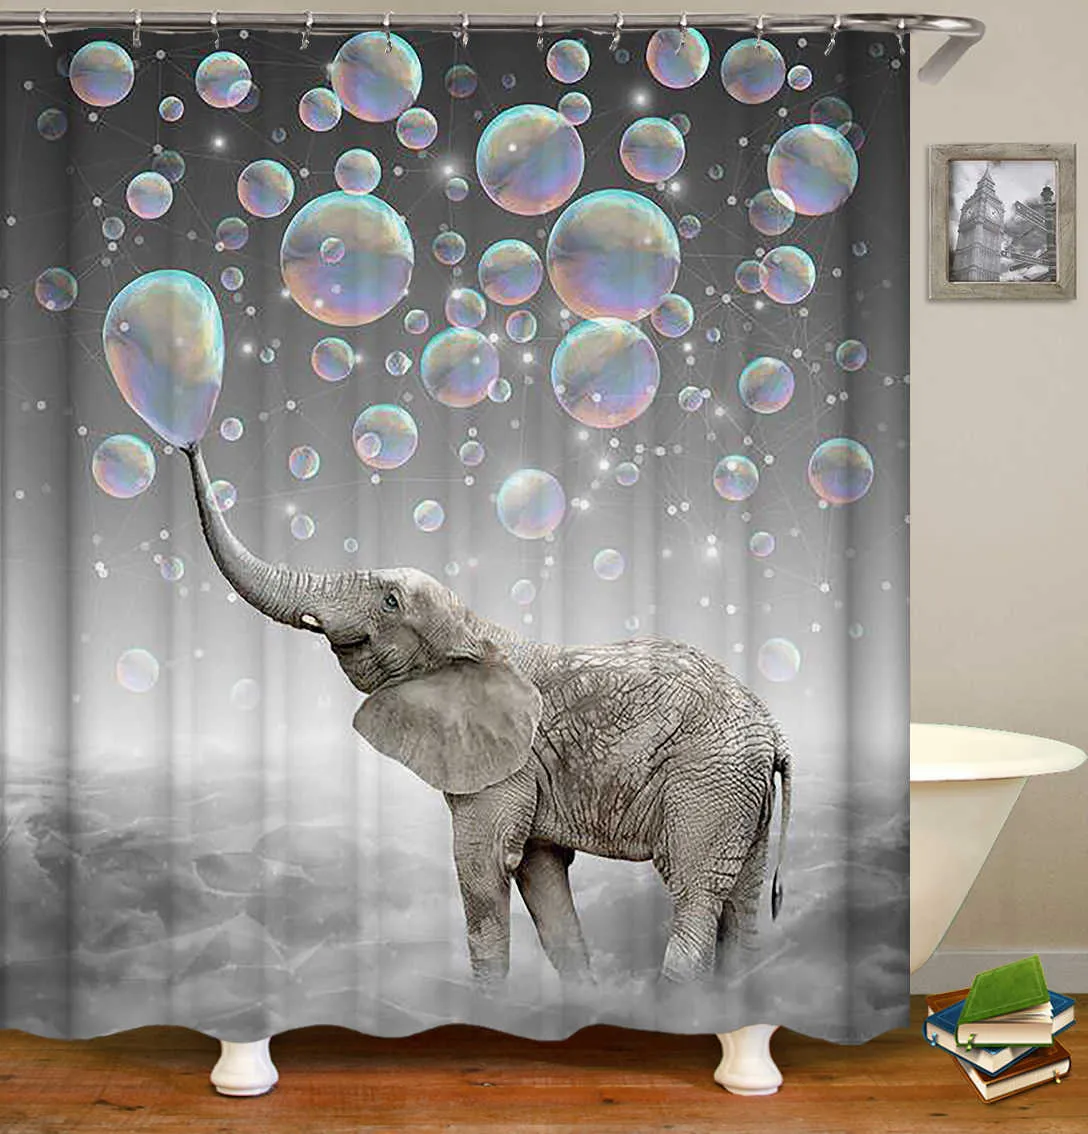 OLOEY 3D Print Shower Curtains Animal Elephant for Bathroom Decor Customized Size Image Bath Curtain Wholesale 210915